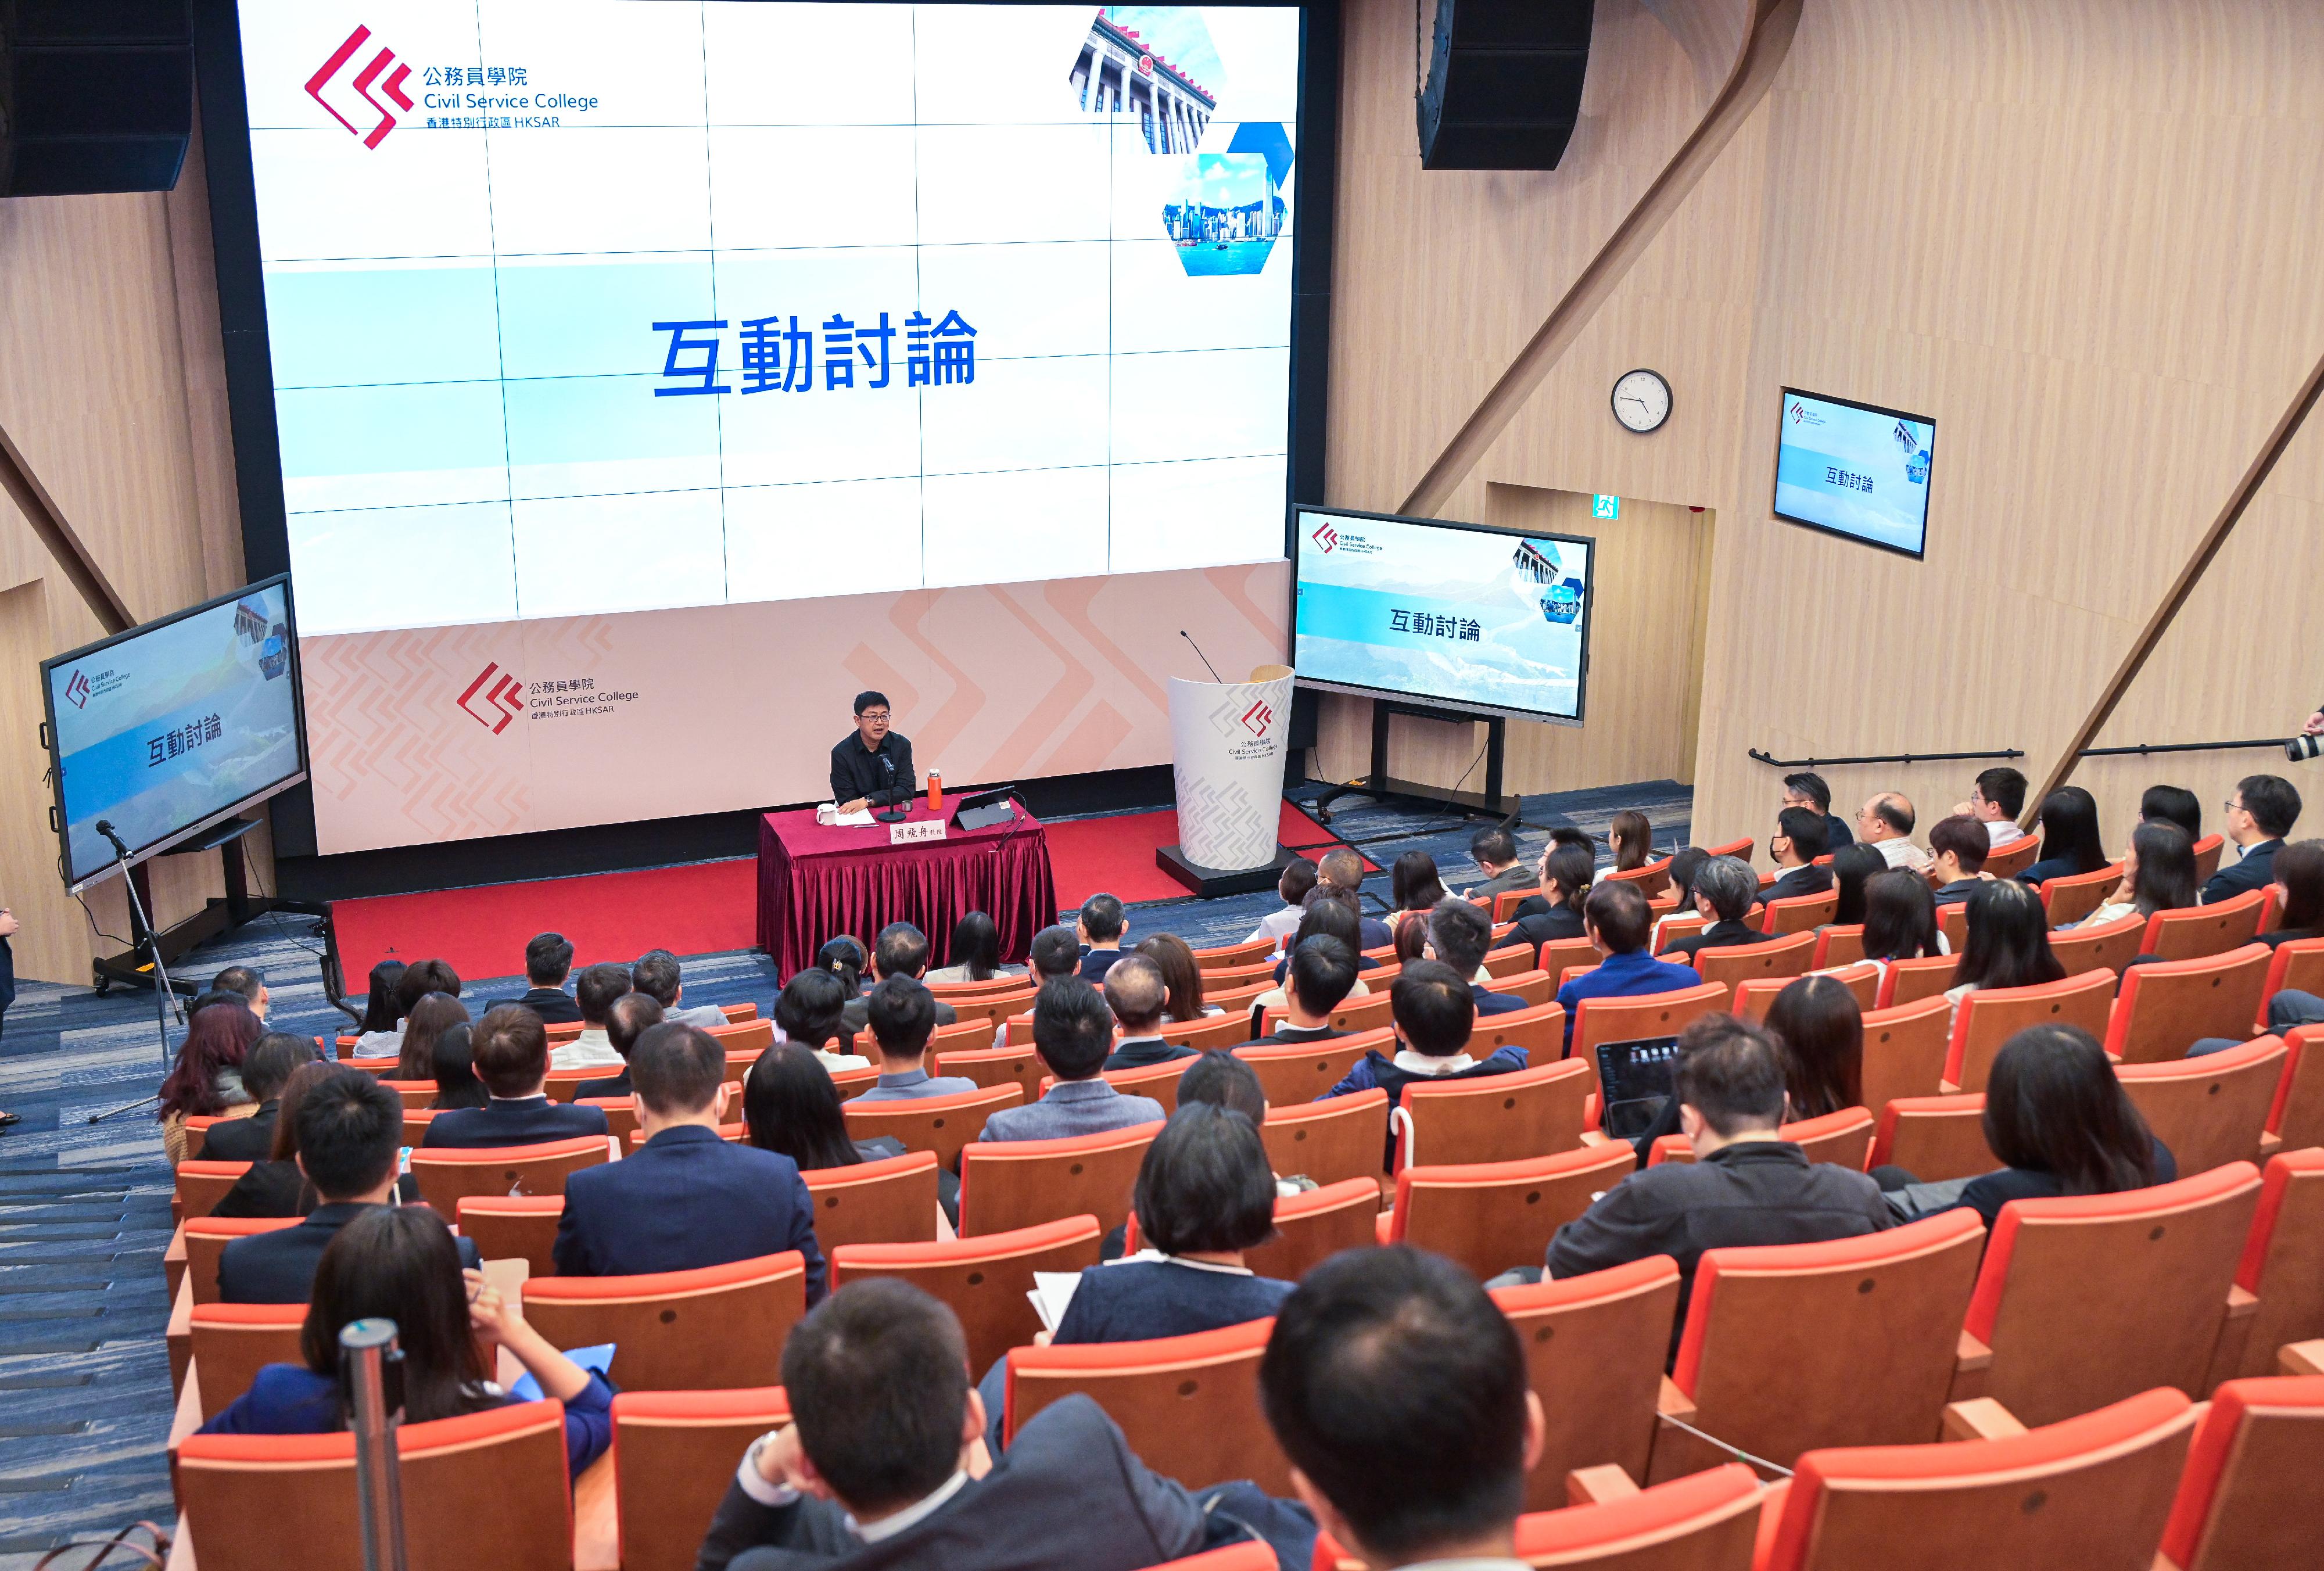 主講的北京大學社會學系系主任周飛舟教授在互動討論環節回答提問。